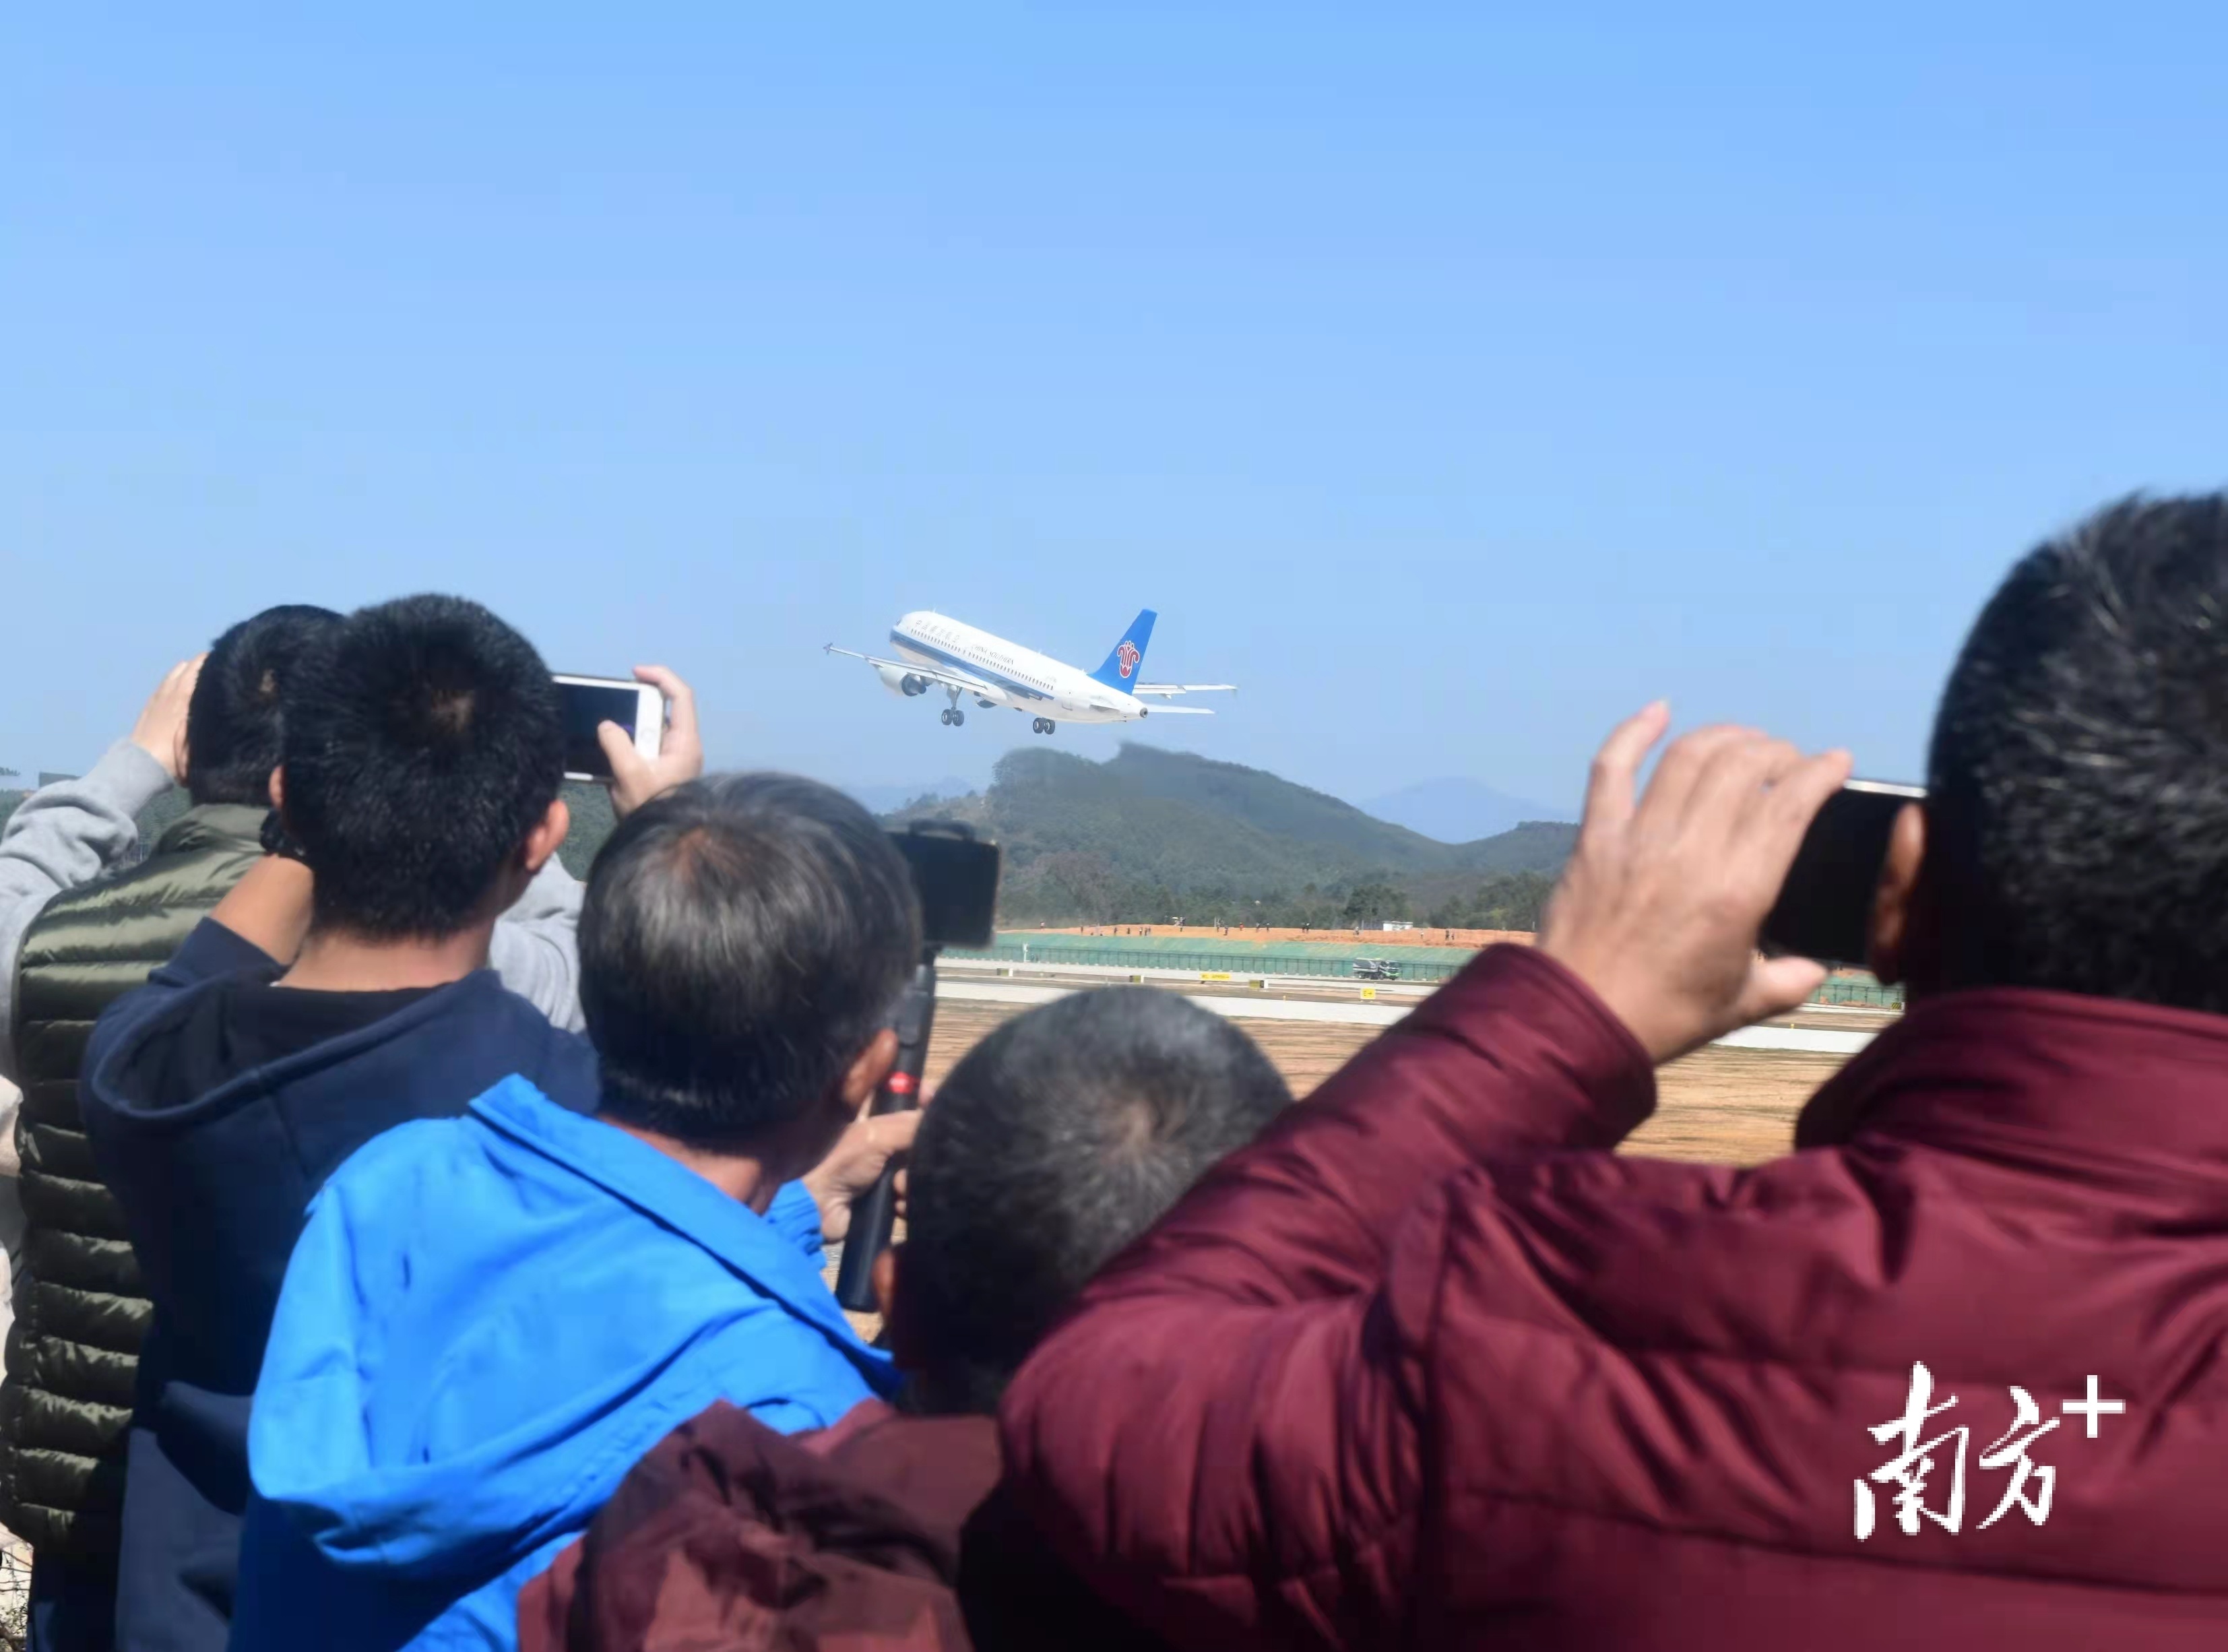 市民用手机记录韶关丹霞机场首航飞机起飞时刻。肖雄 摄